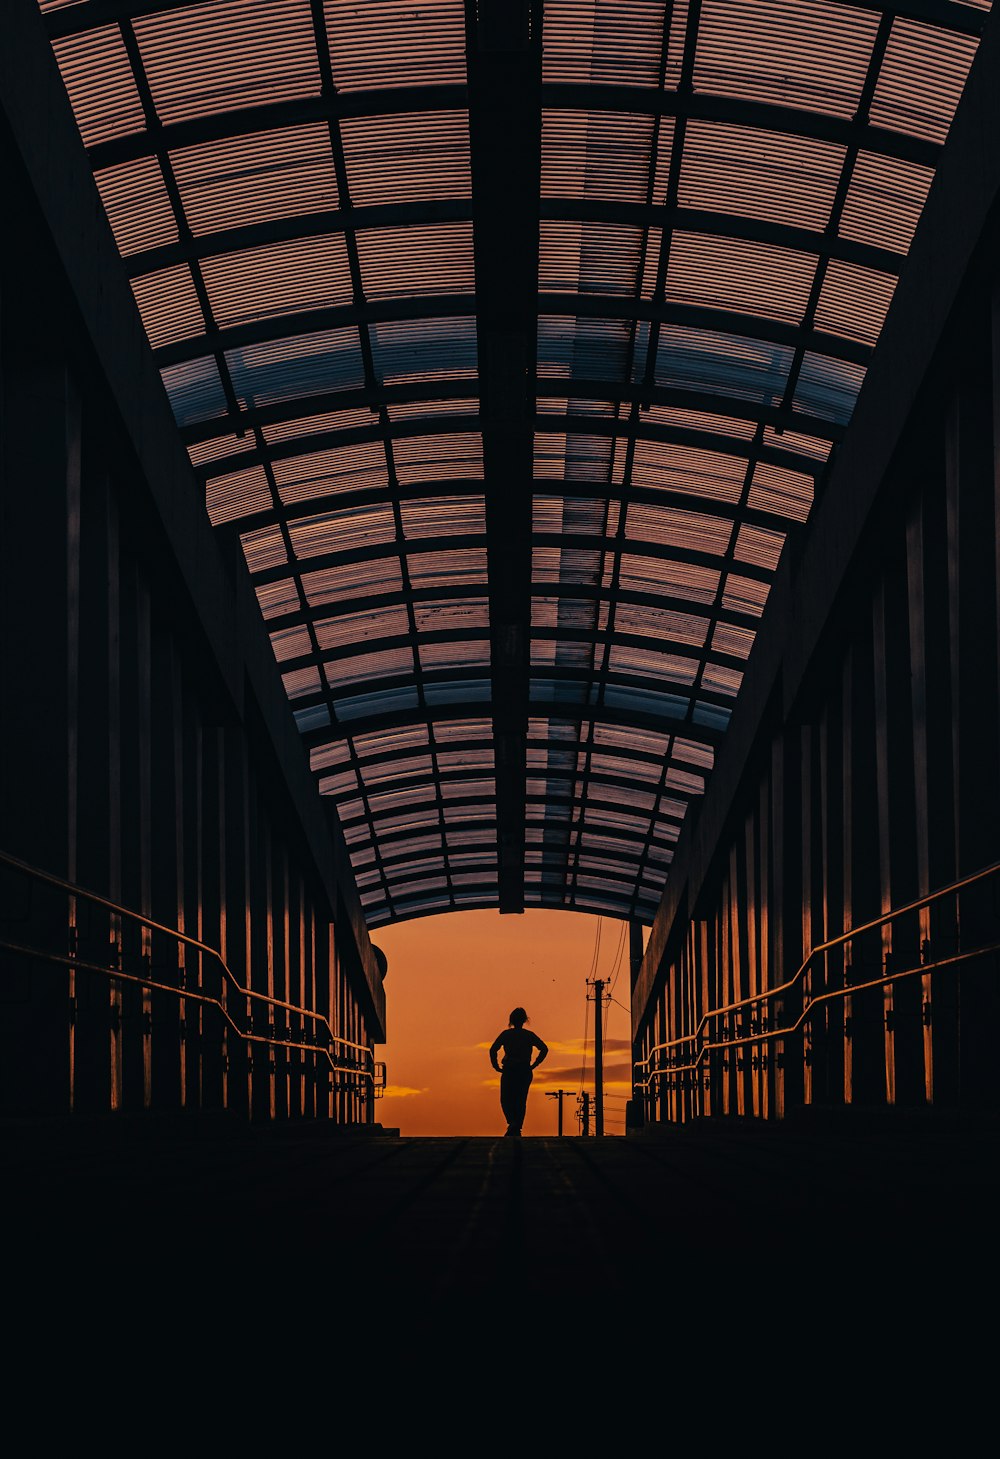 la silhouette d’une personne debout dans une gare